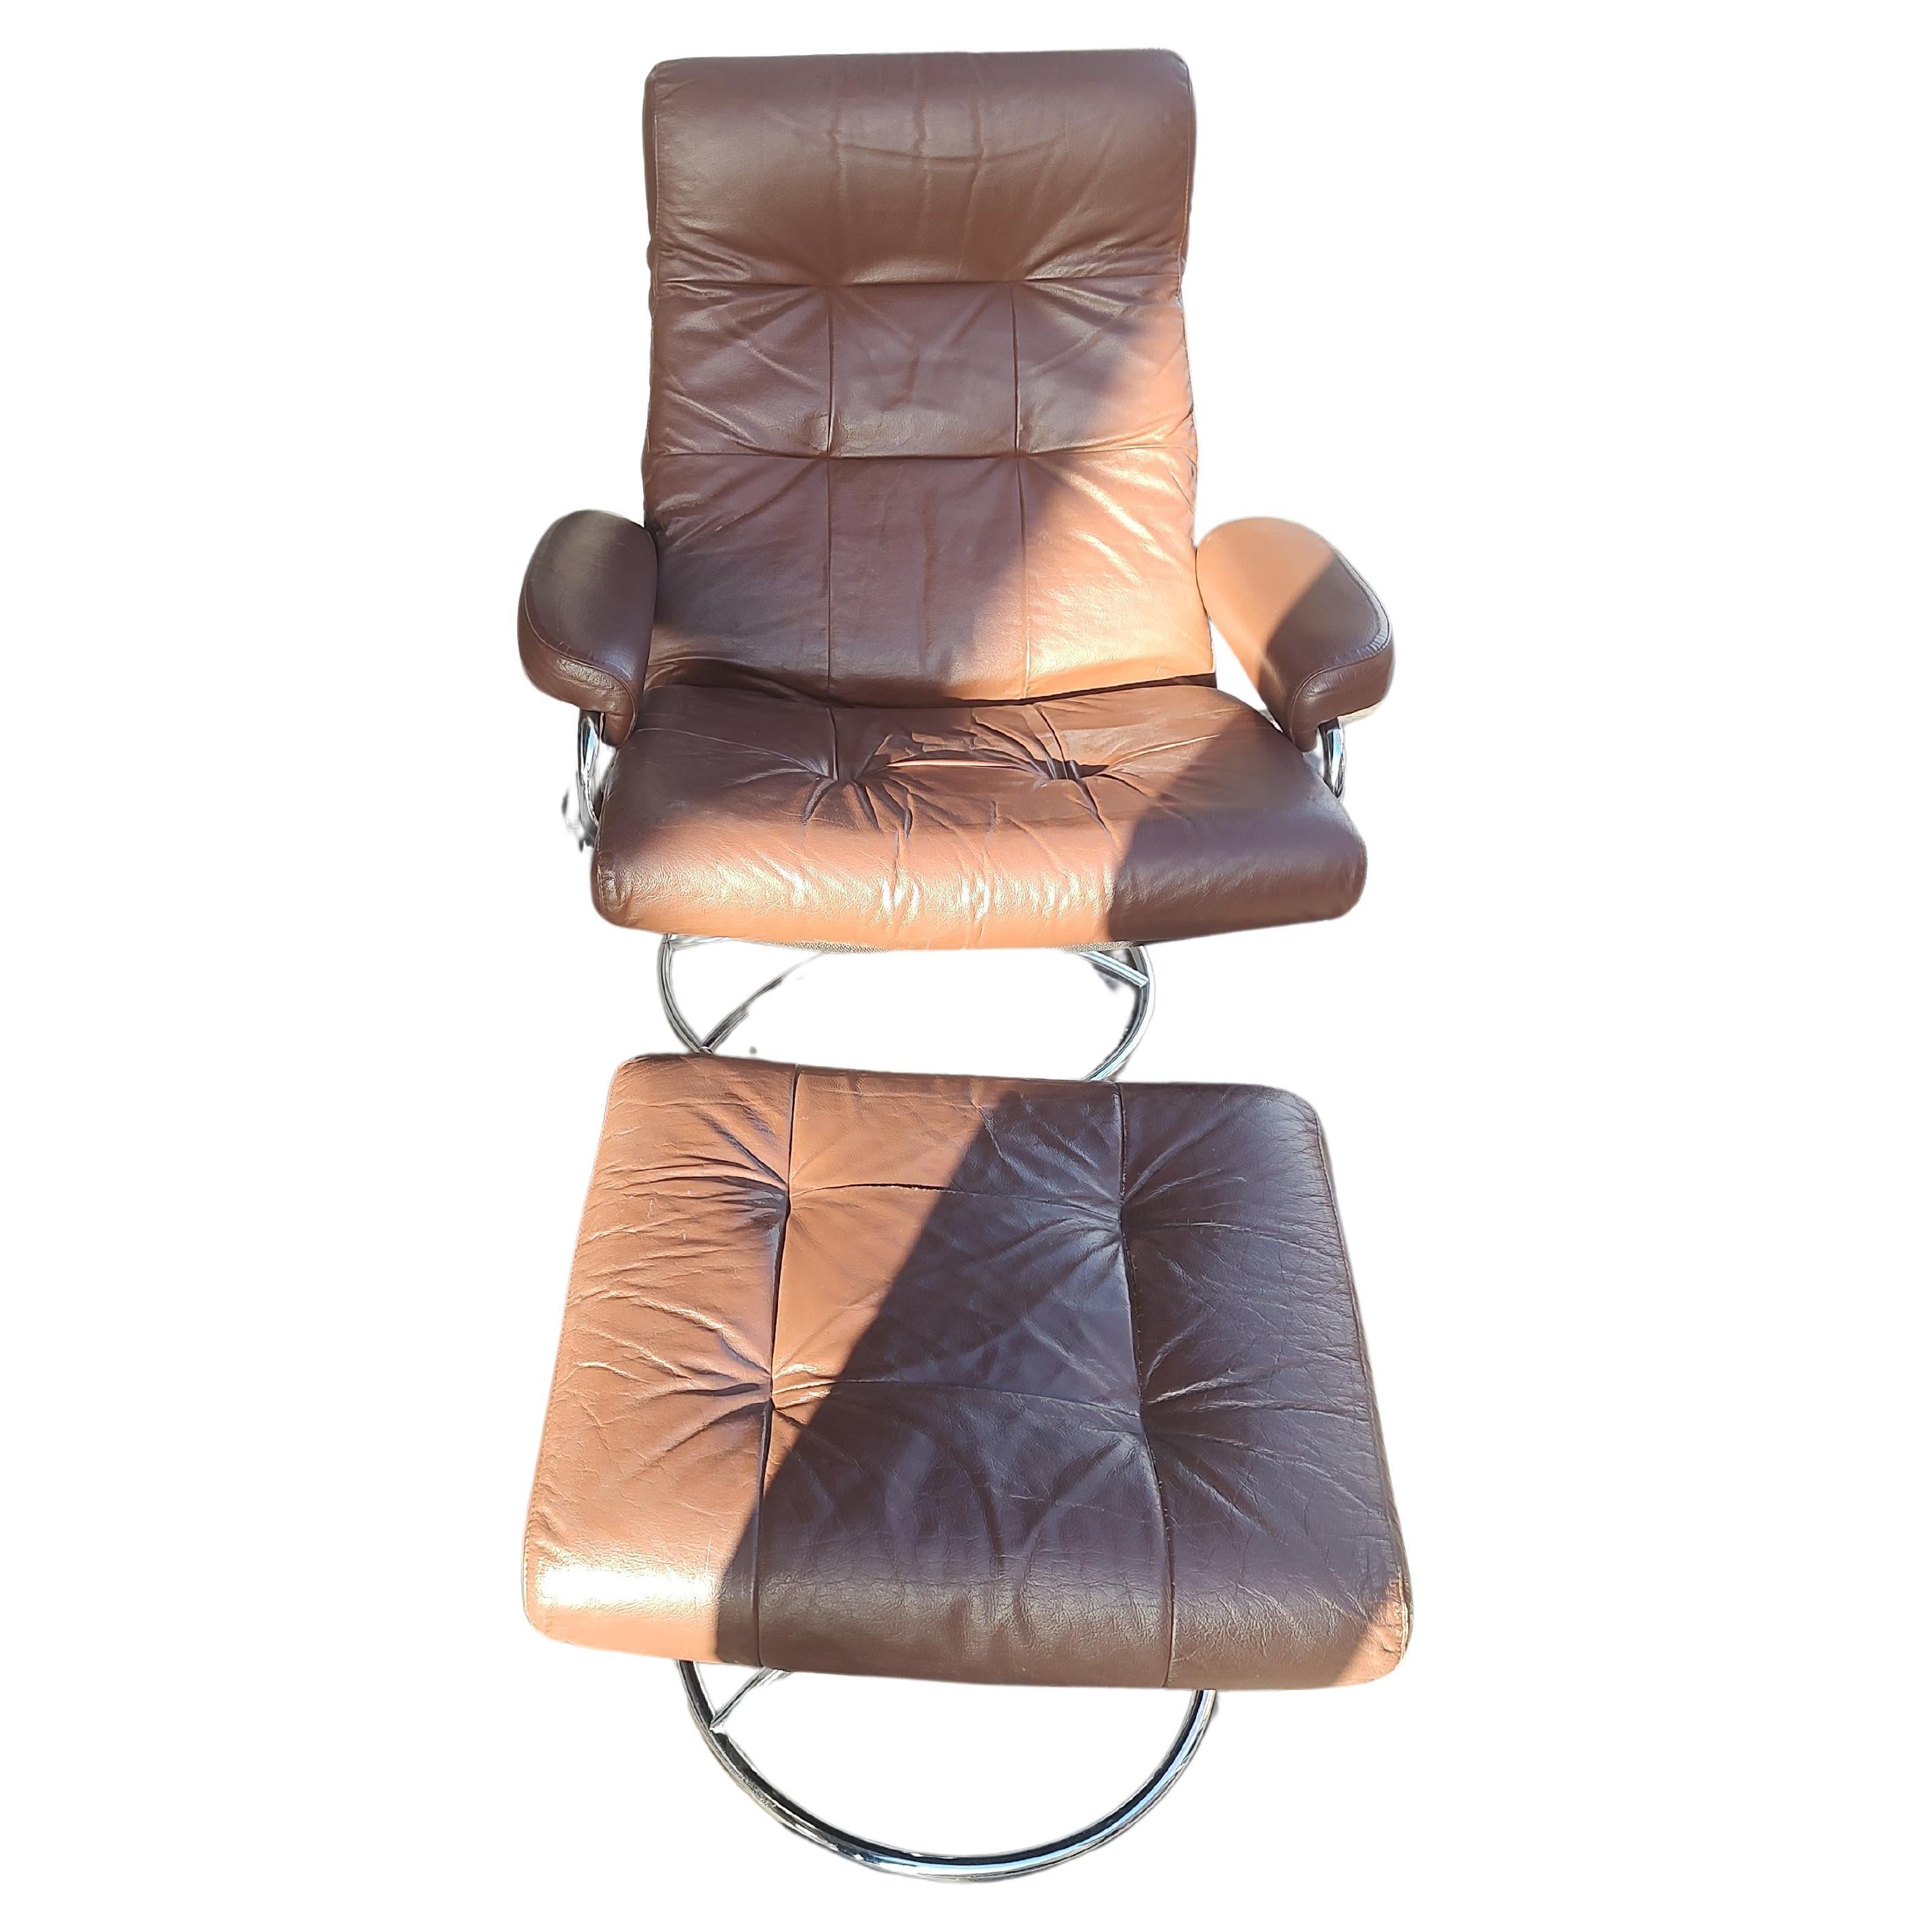 Fabuleux fauteuil inclinable Stressless Lounge de 1970 avec ottoman, fabriqué par Ekornes en Norvège. Le cuir marron est en excellent état avec un petit pli sur l'ottoman. Le chrome est vif et brillant. La mécanique est excellente. Le pouf est 22 x